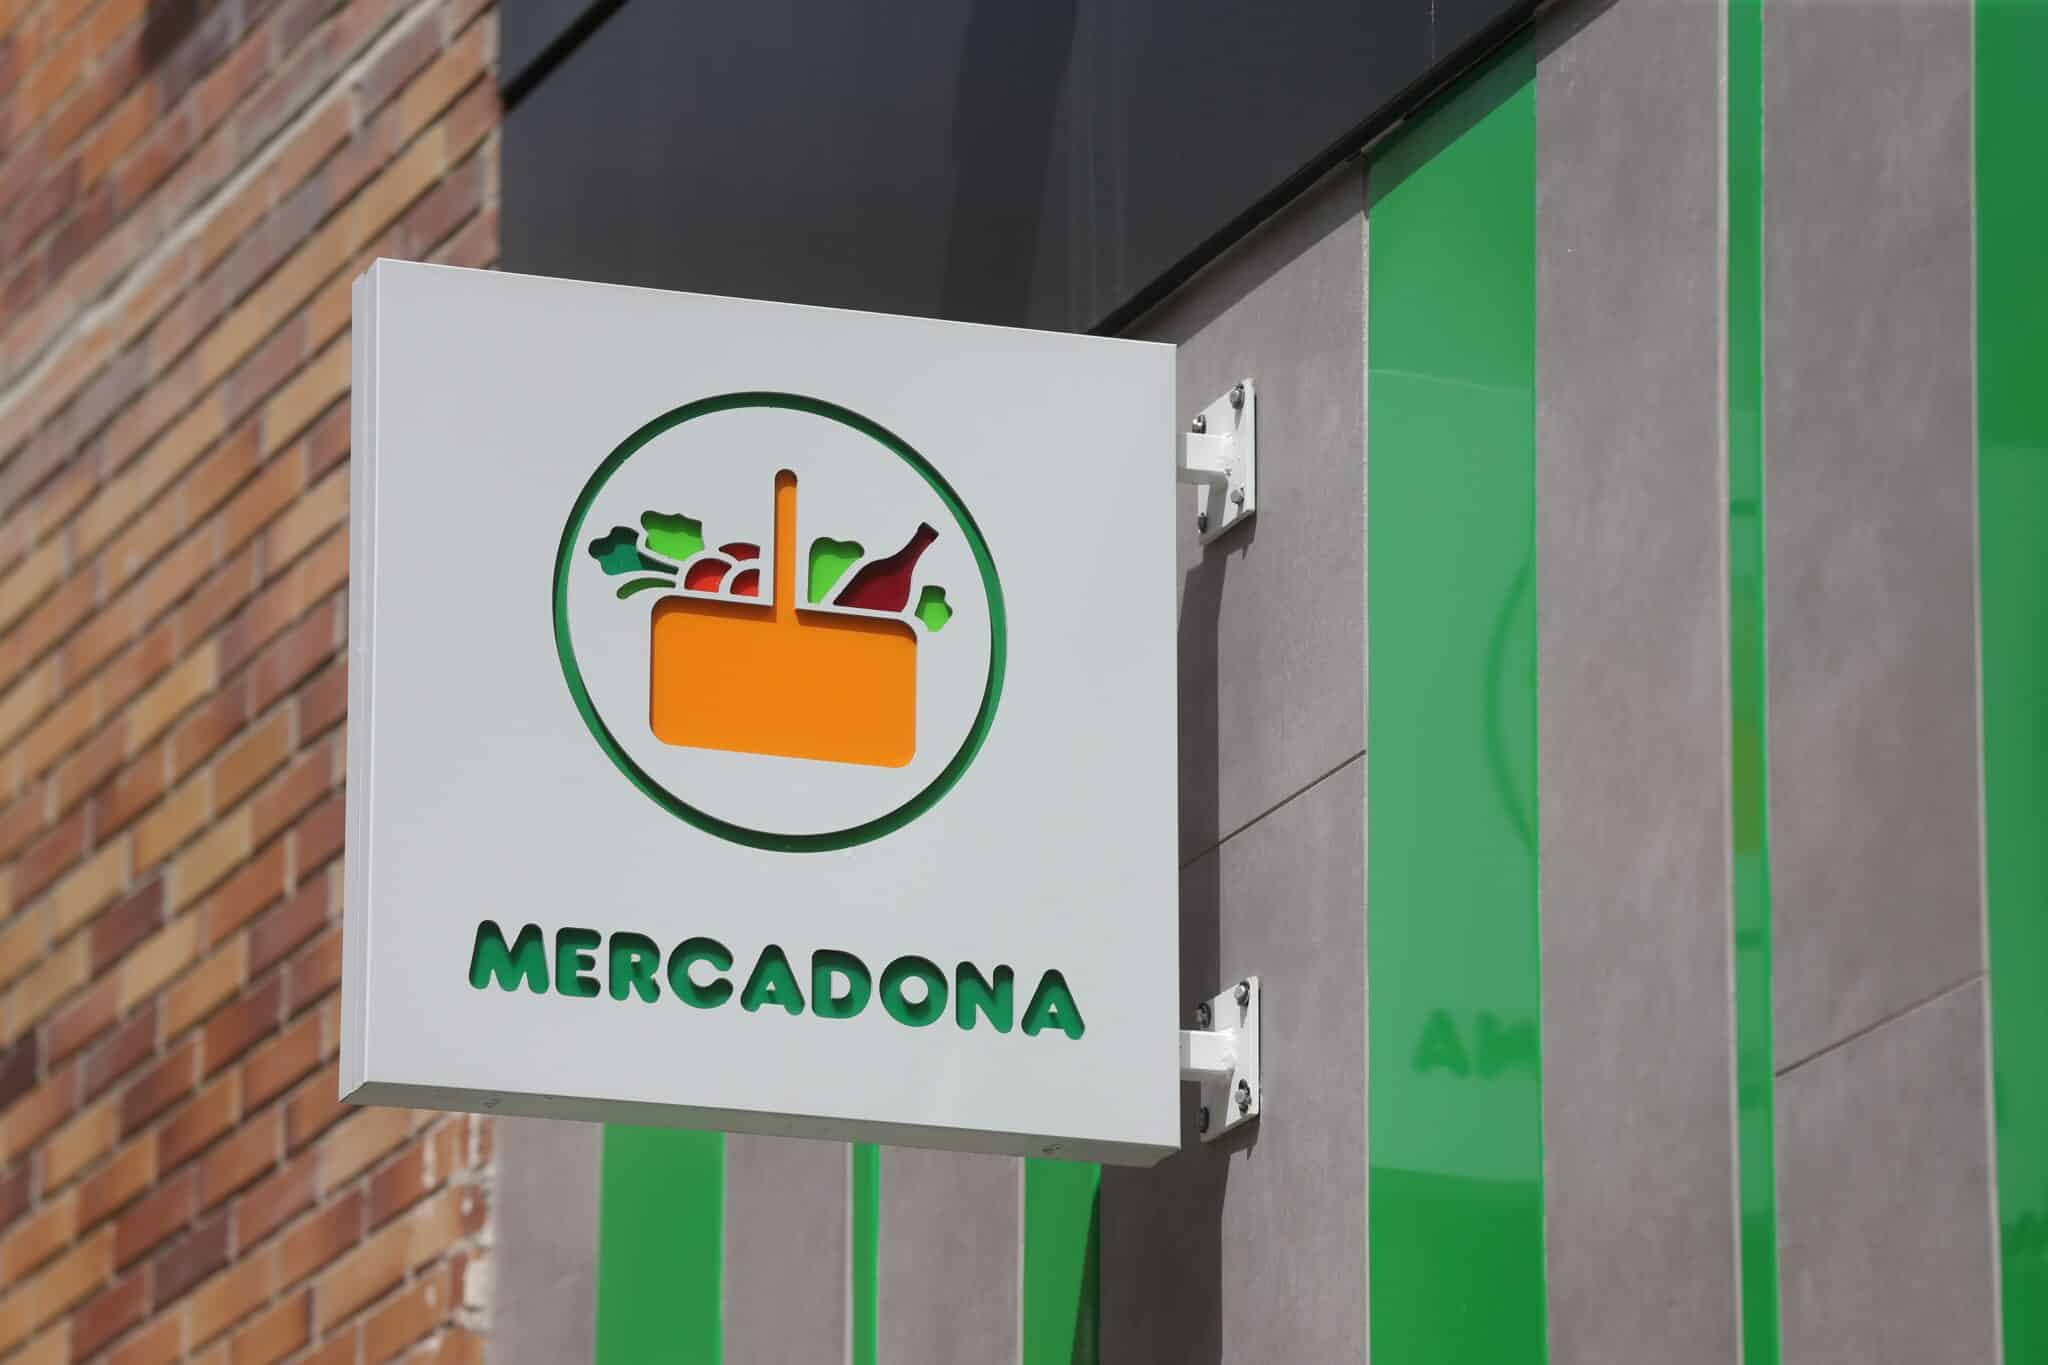 Exterior de un supermercado de Mercadona, a 23 de julio de 2021, en Madrid (España).